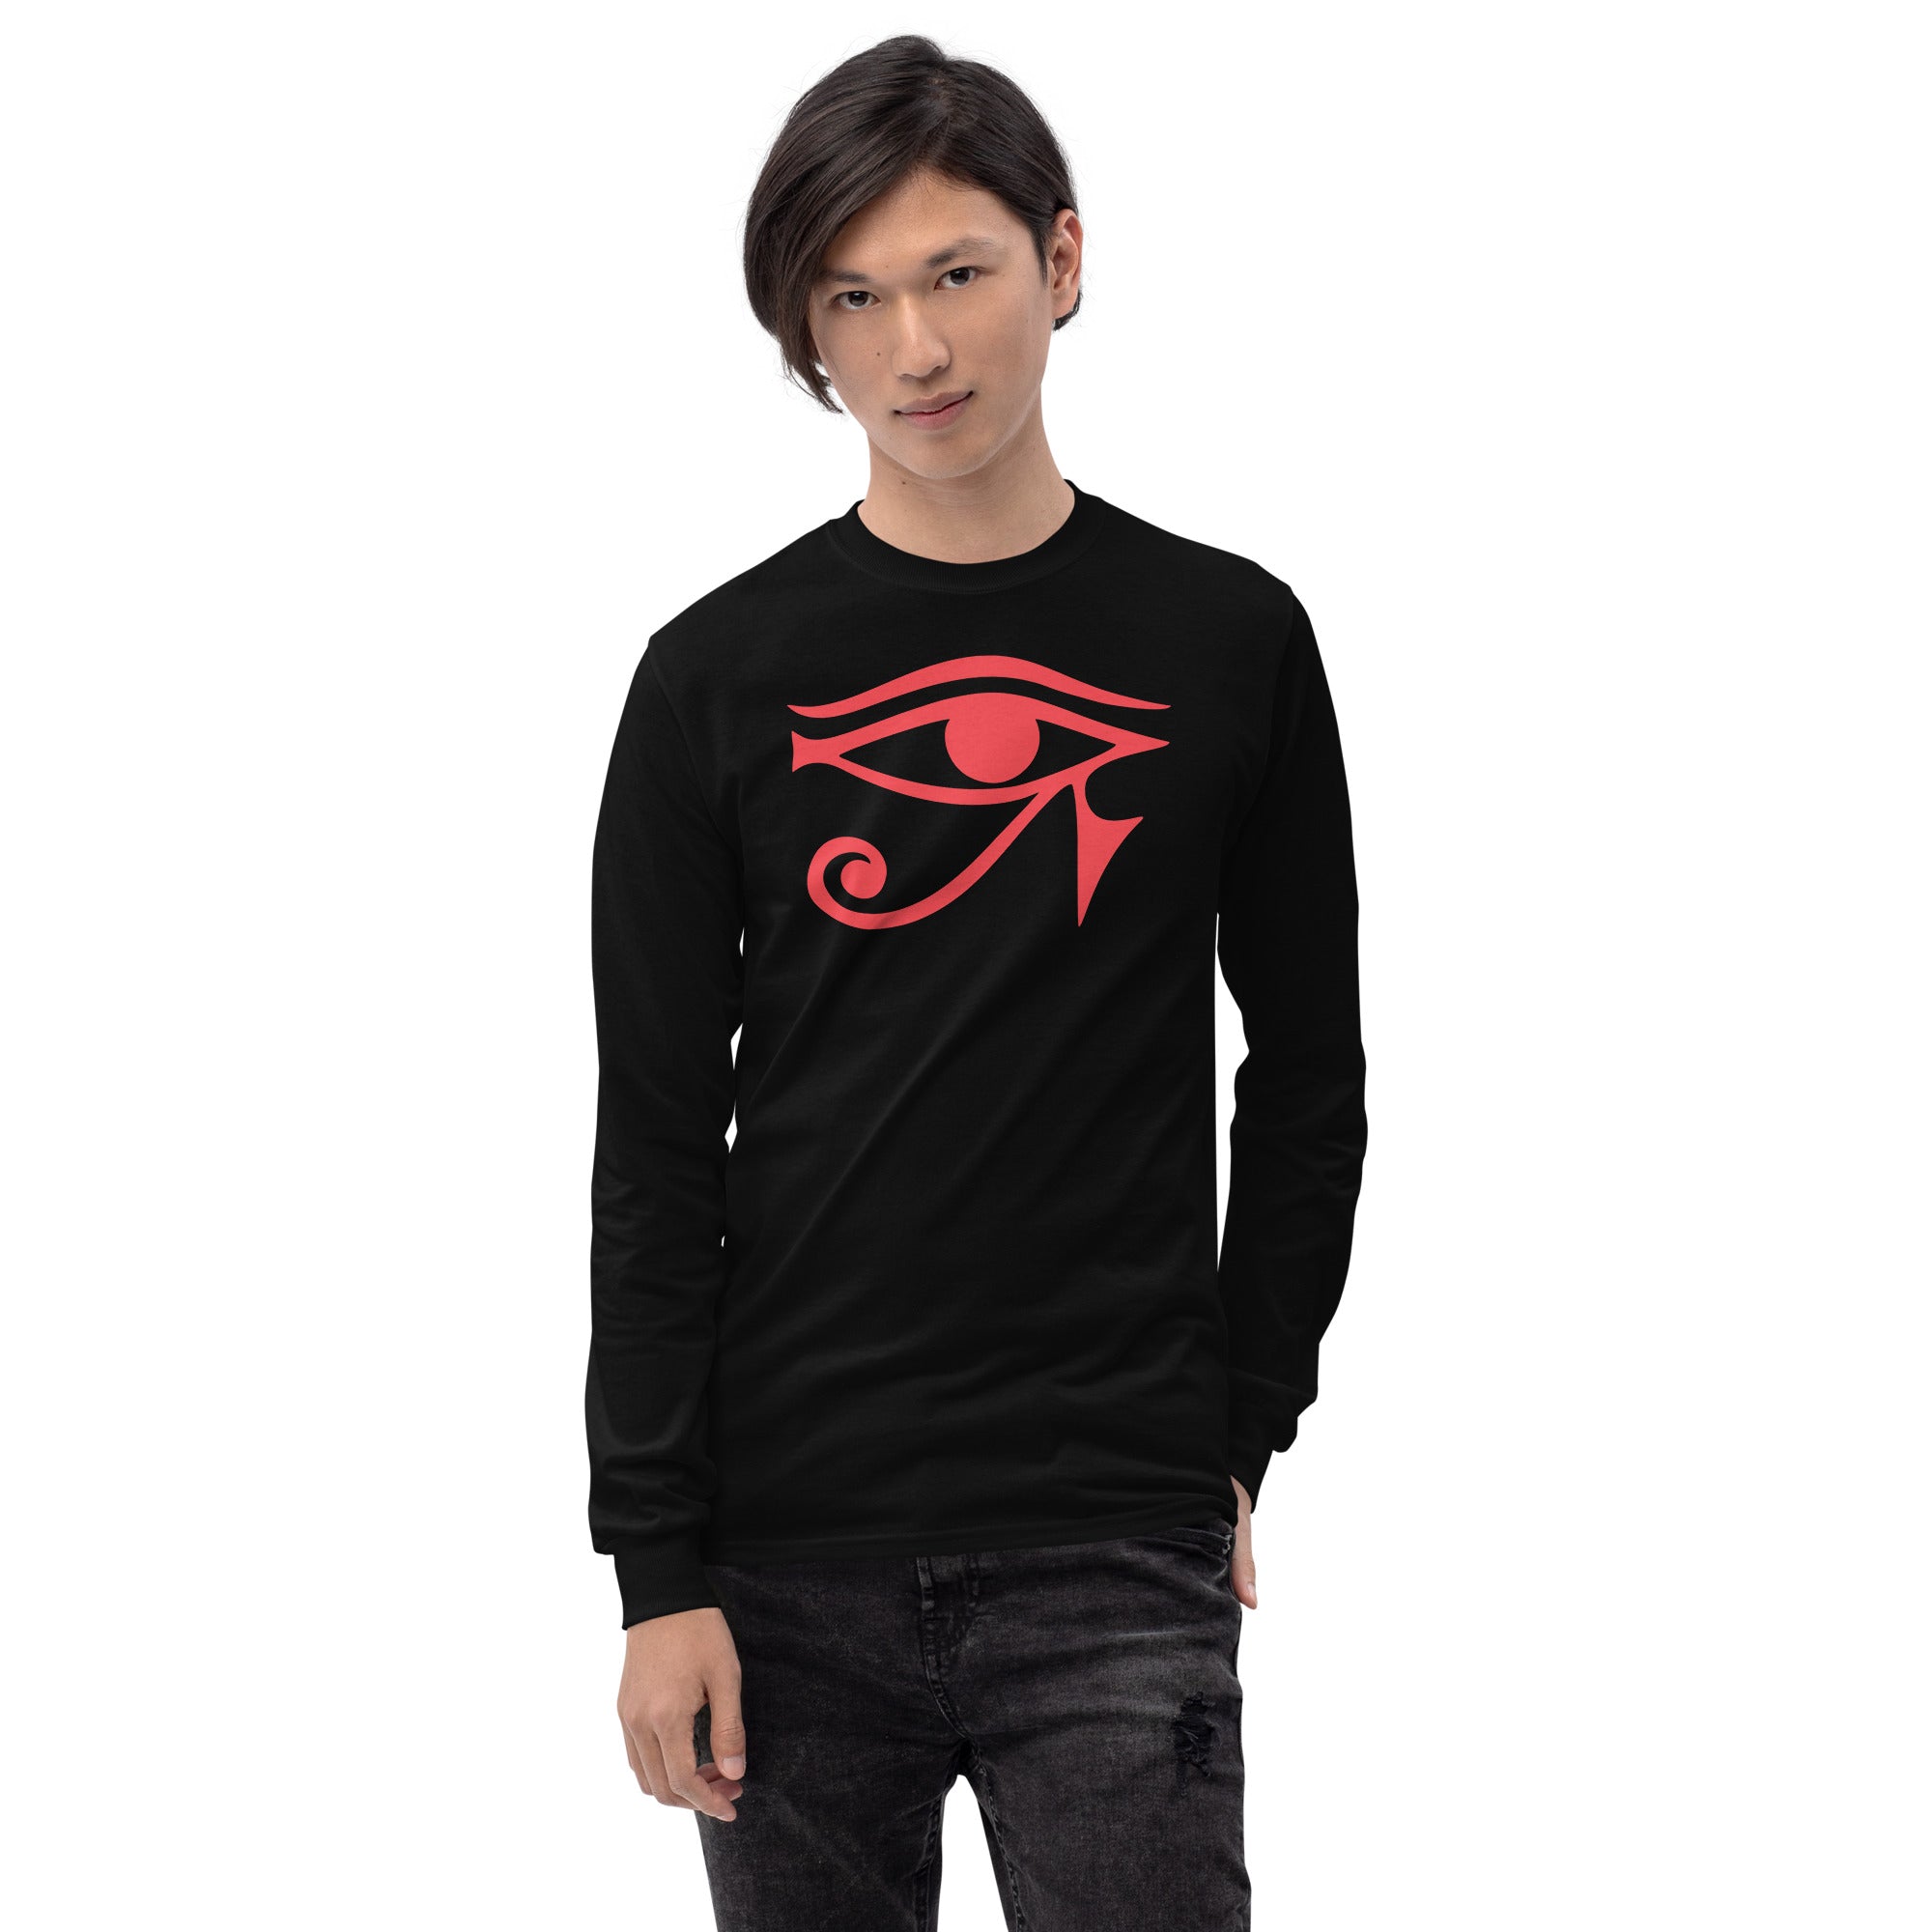 Eye of Ra Egyptian Goddess Long Sleeve Shirt Red Print - Edge of Life Designs